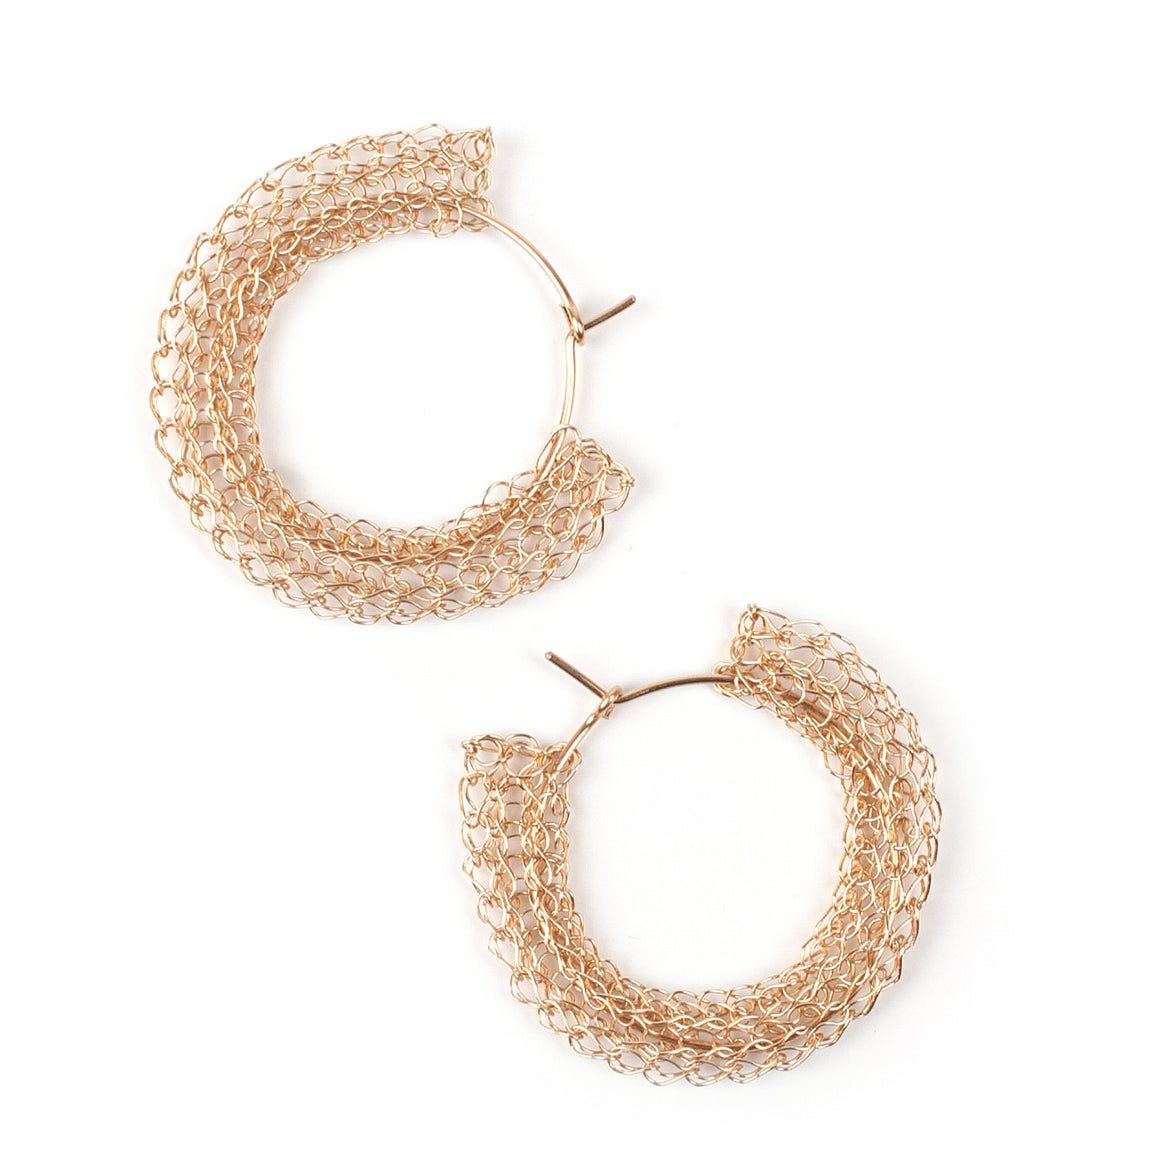 Gypsy hoop earrings, gold medium hoops - Yooladesign